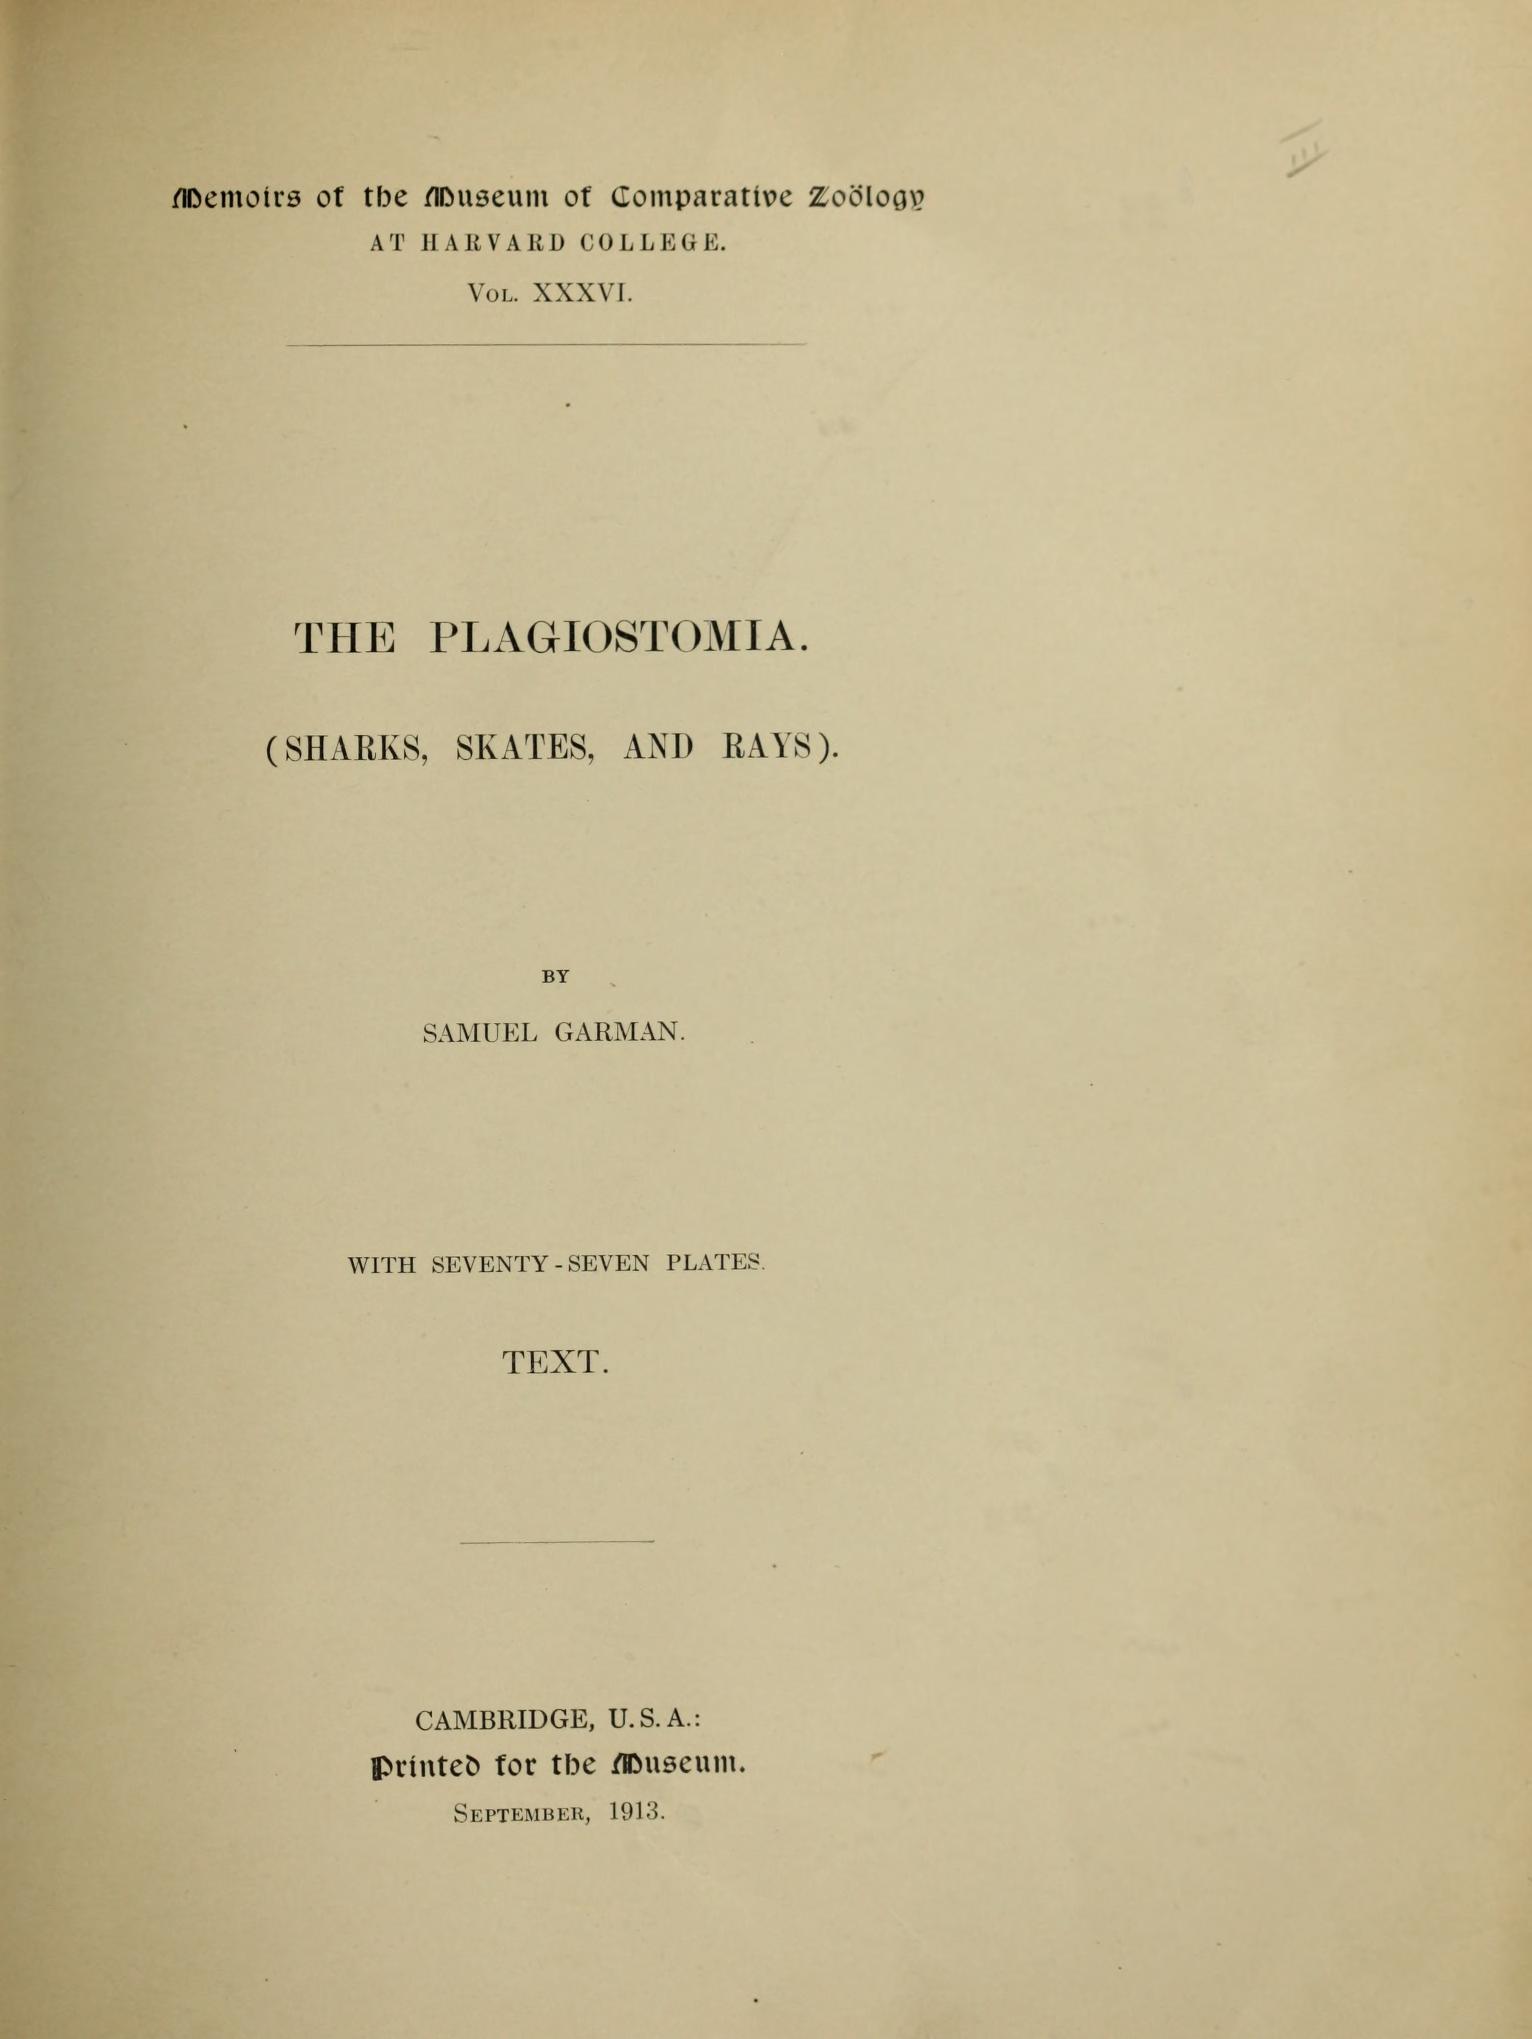 Media type: text, Garman 1913 Description: MCZ Memoirs Vol. XXXVI [Text]